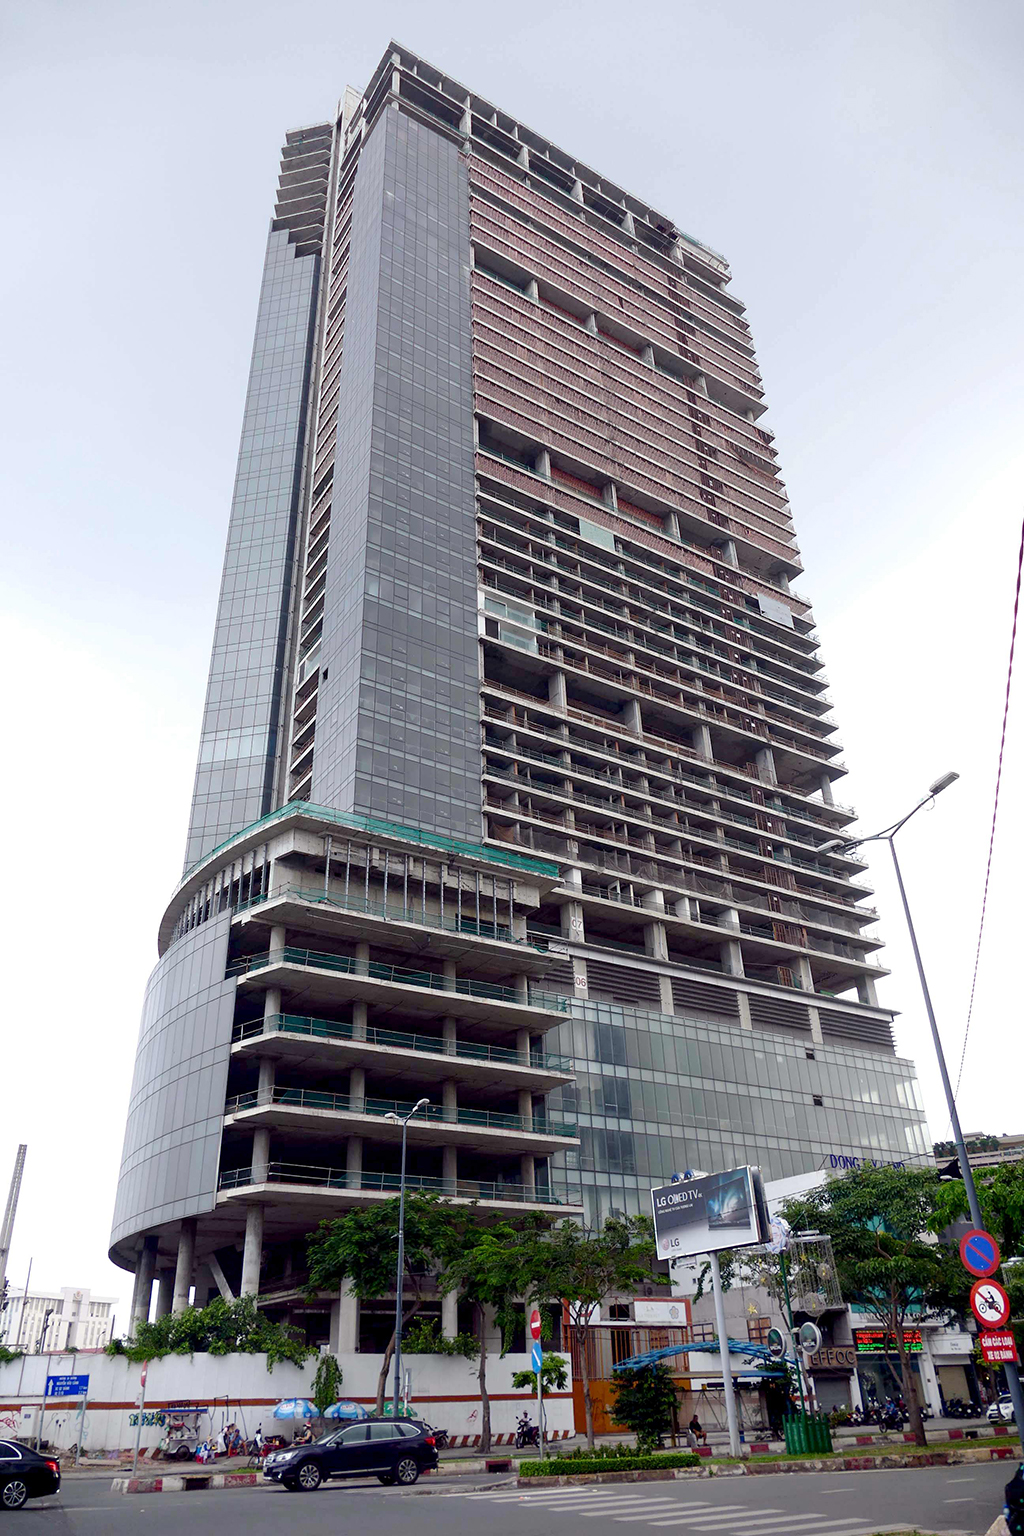 Dự án cao ốc Sài Gòn M&C (Saigon One Tower, số 34 Tôn Đức Thắng, Q.1, TP.HCM) đến nay vẫn chưa hoàn thiện Ảnh: Đào Ngọc Thạch